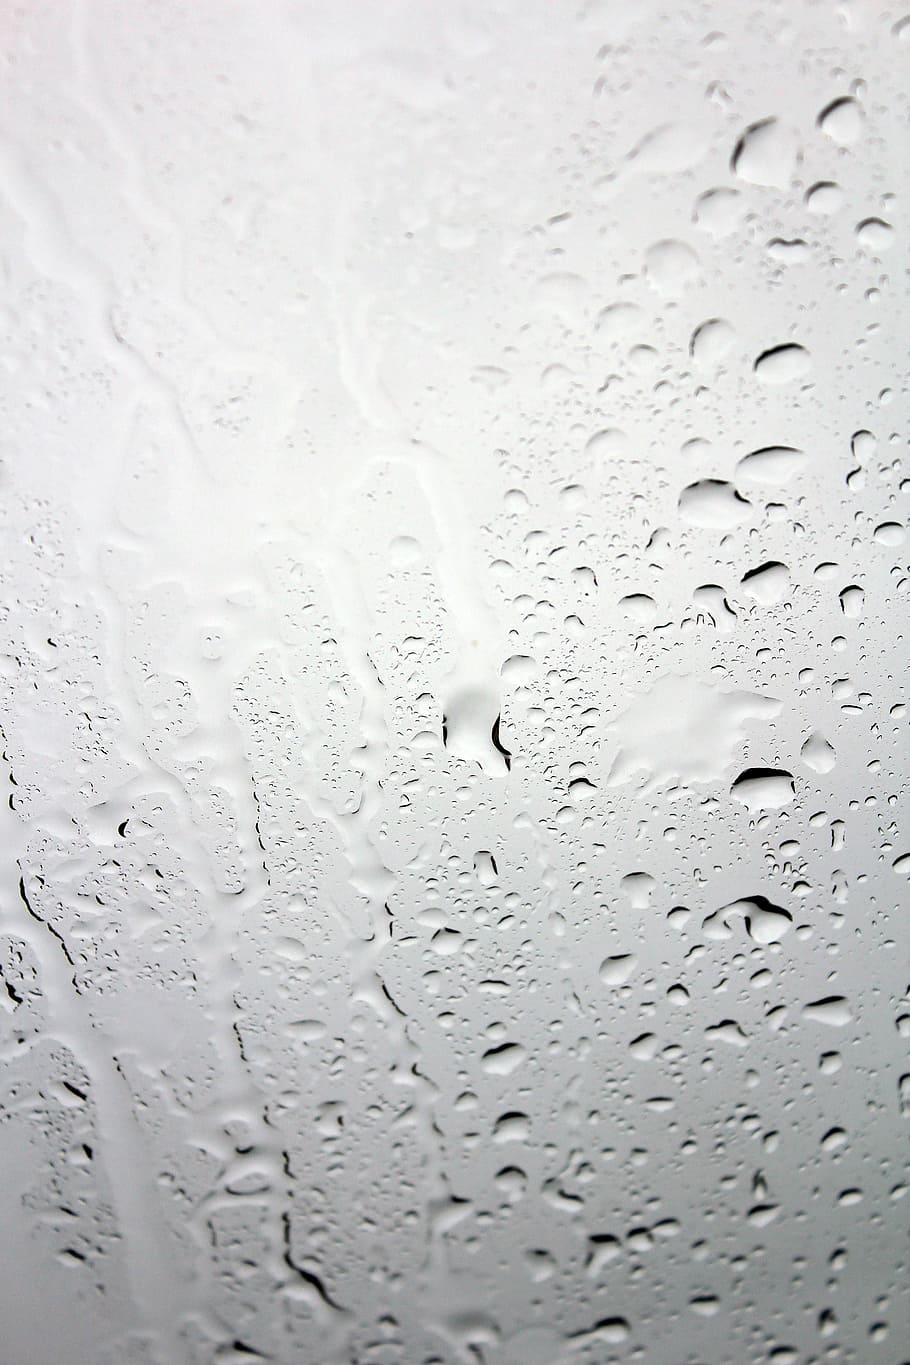 vidrio, gotas de agua, Disco, Ventana, Agua, Goteo, Húmedo, lluvia, depresión, gota de lluvia